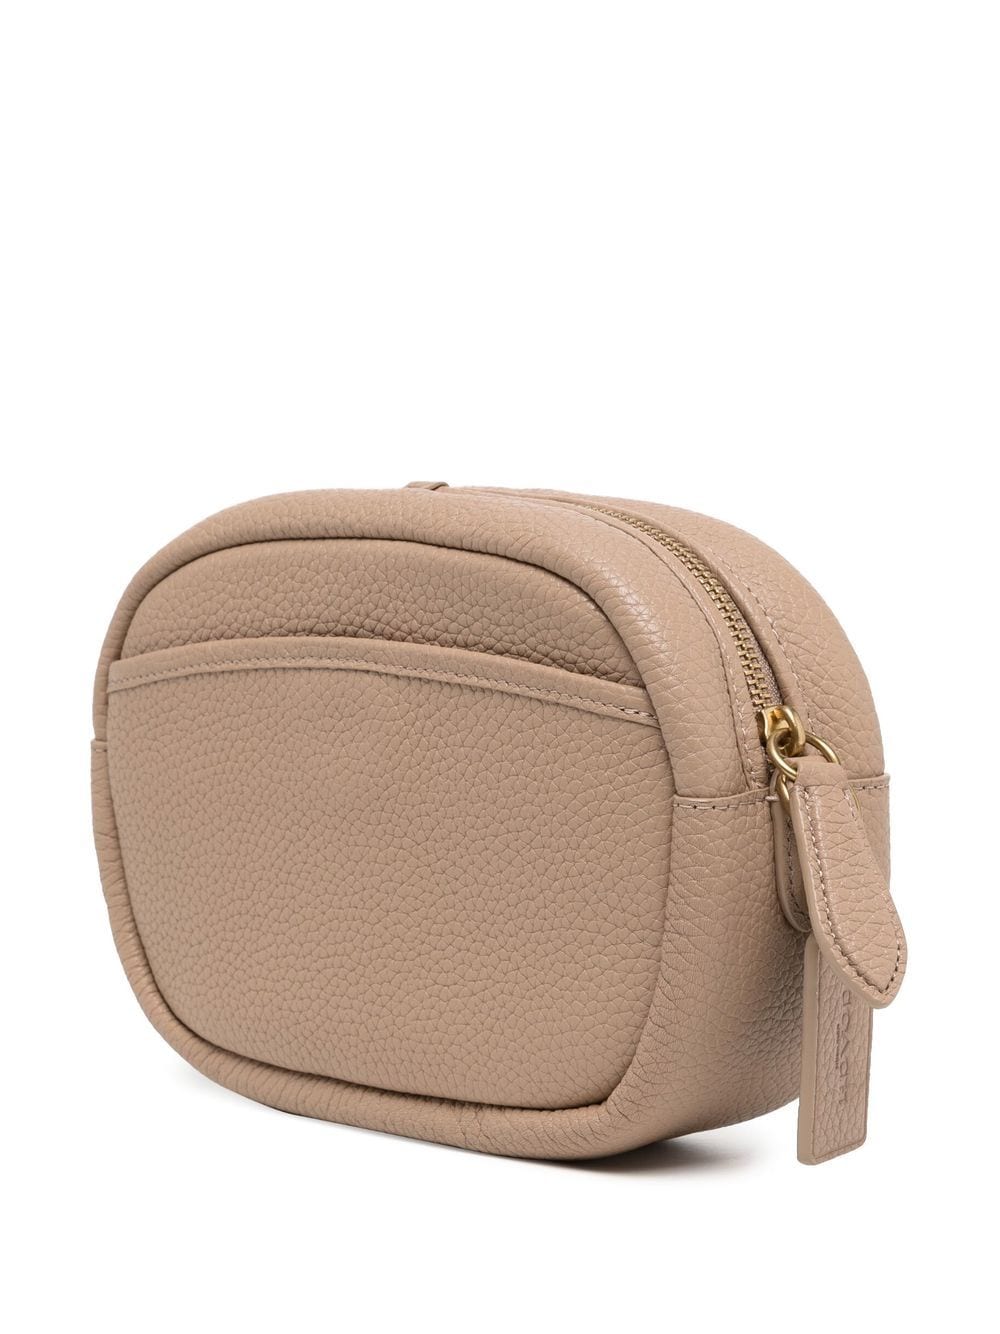 Coach Ladies Leather Camera Bag 29411 LIBLK 191202713086 - Handbags -  Jomashop